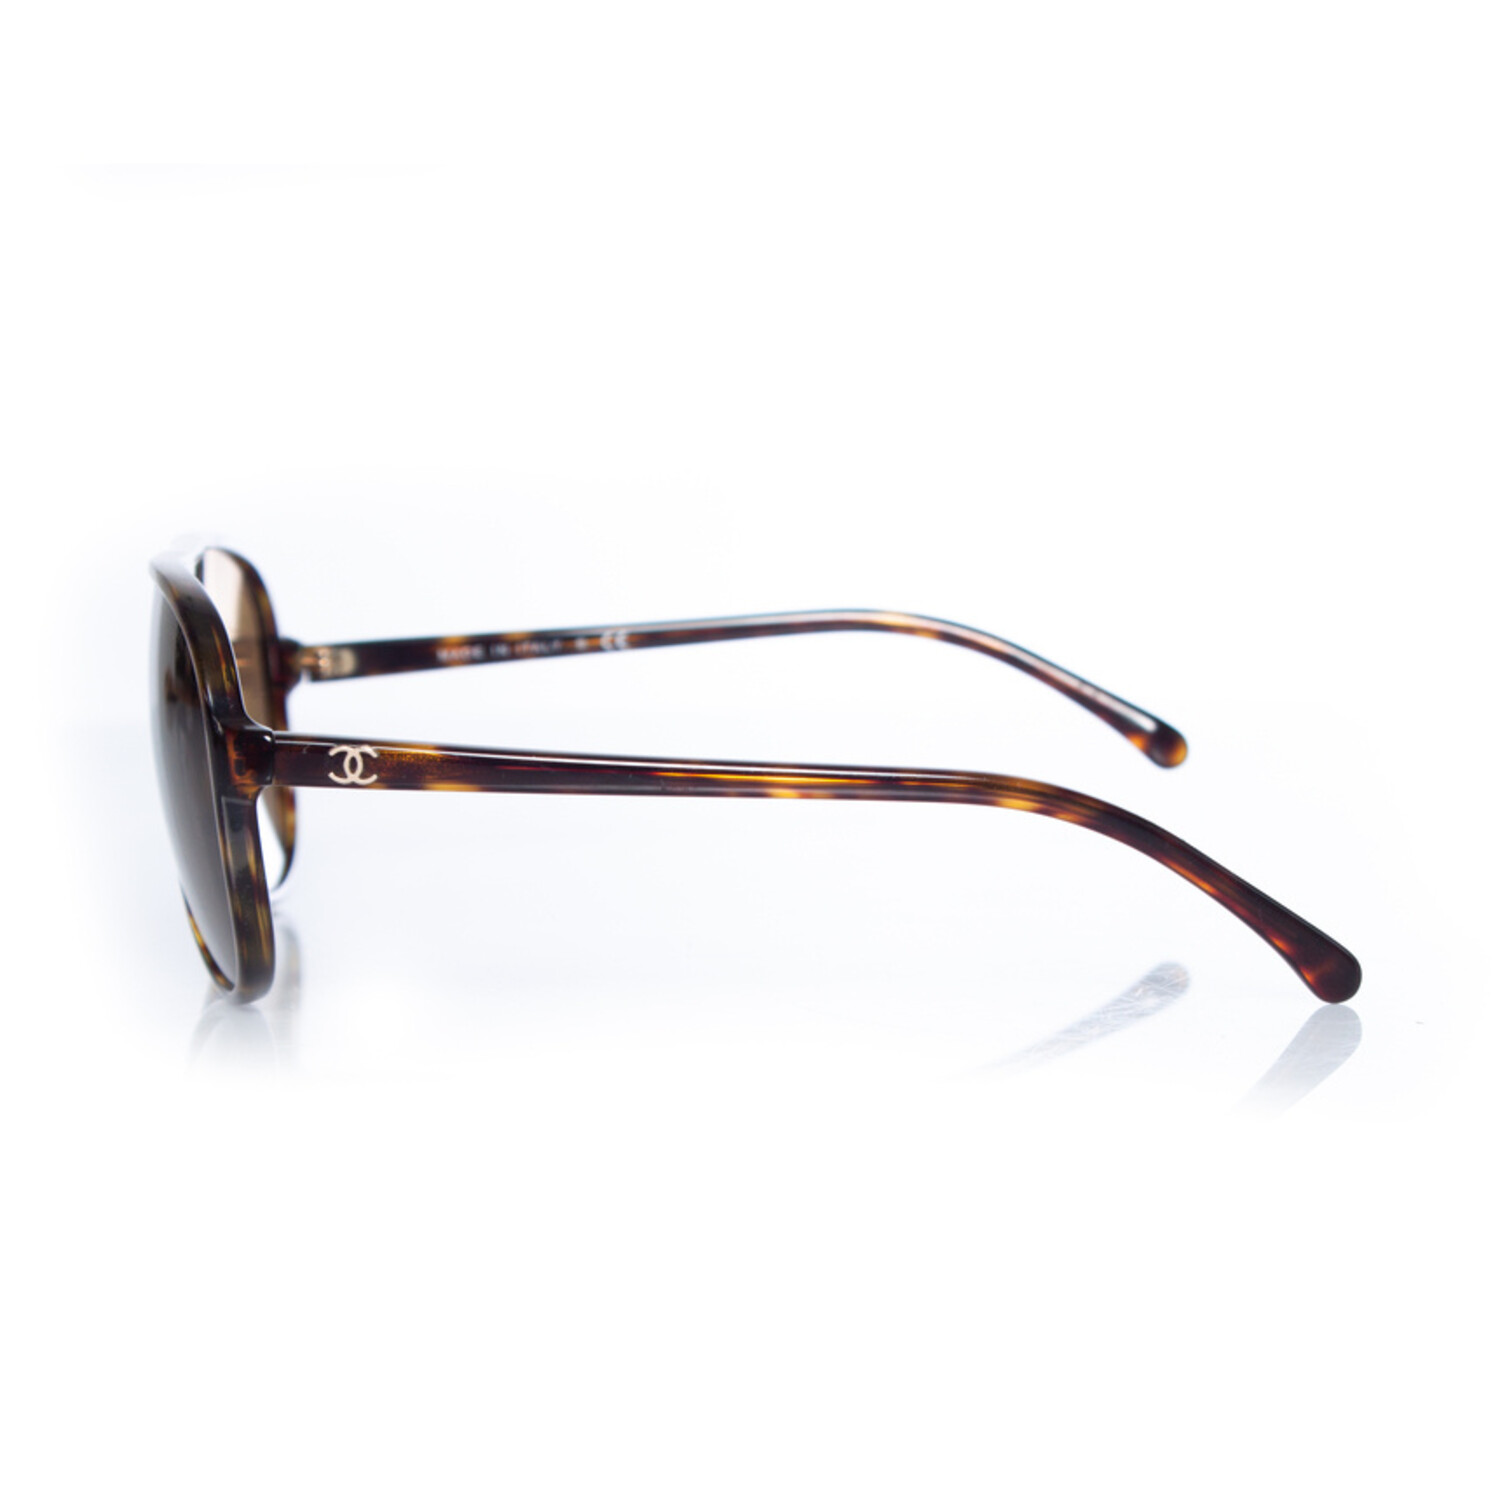 Chanel, aviator sunglasses in tortoise print - Unique Designer Pieces